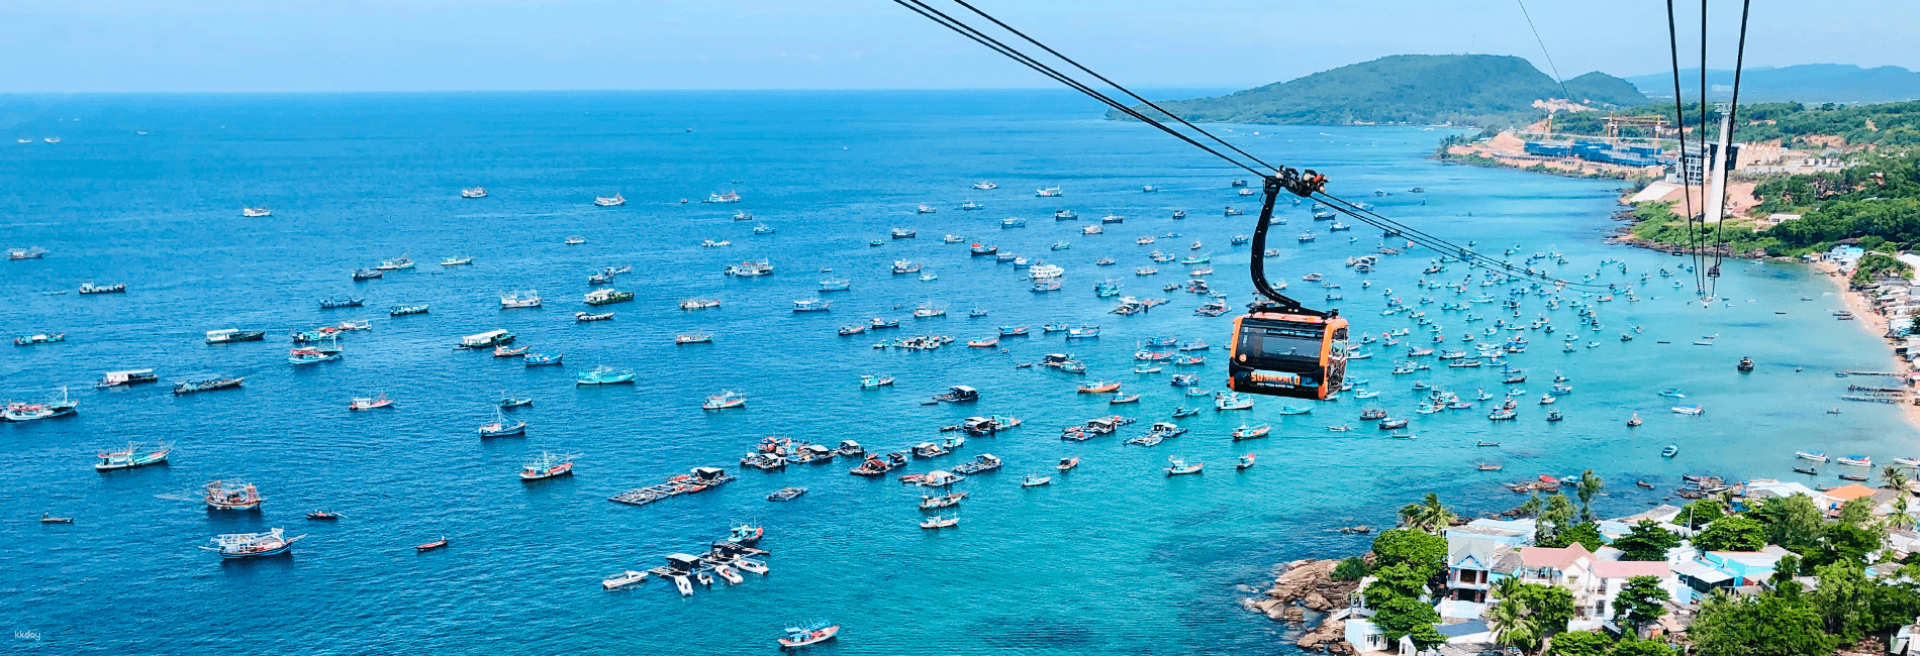 越南-南富國島一日遊含纜車體驗| 世界最長纜車